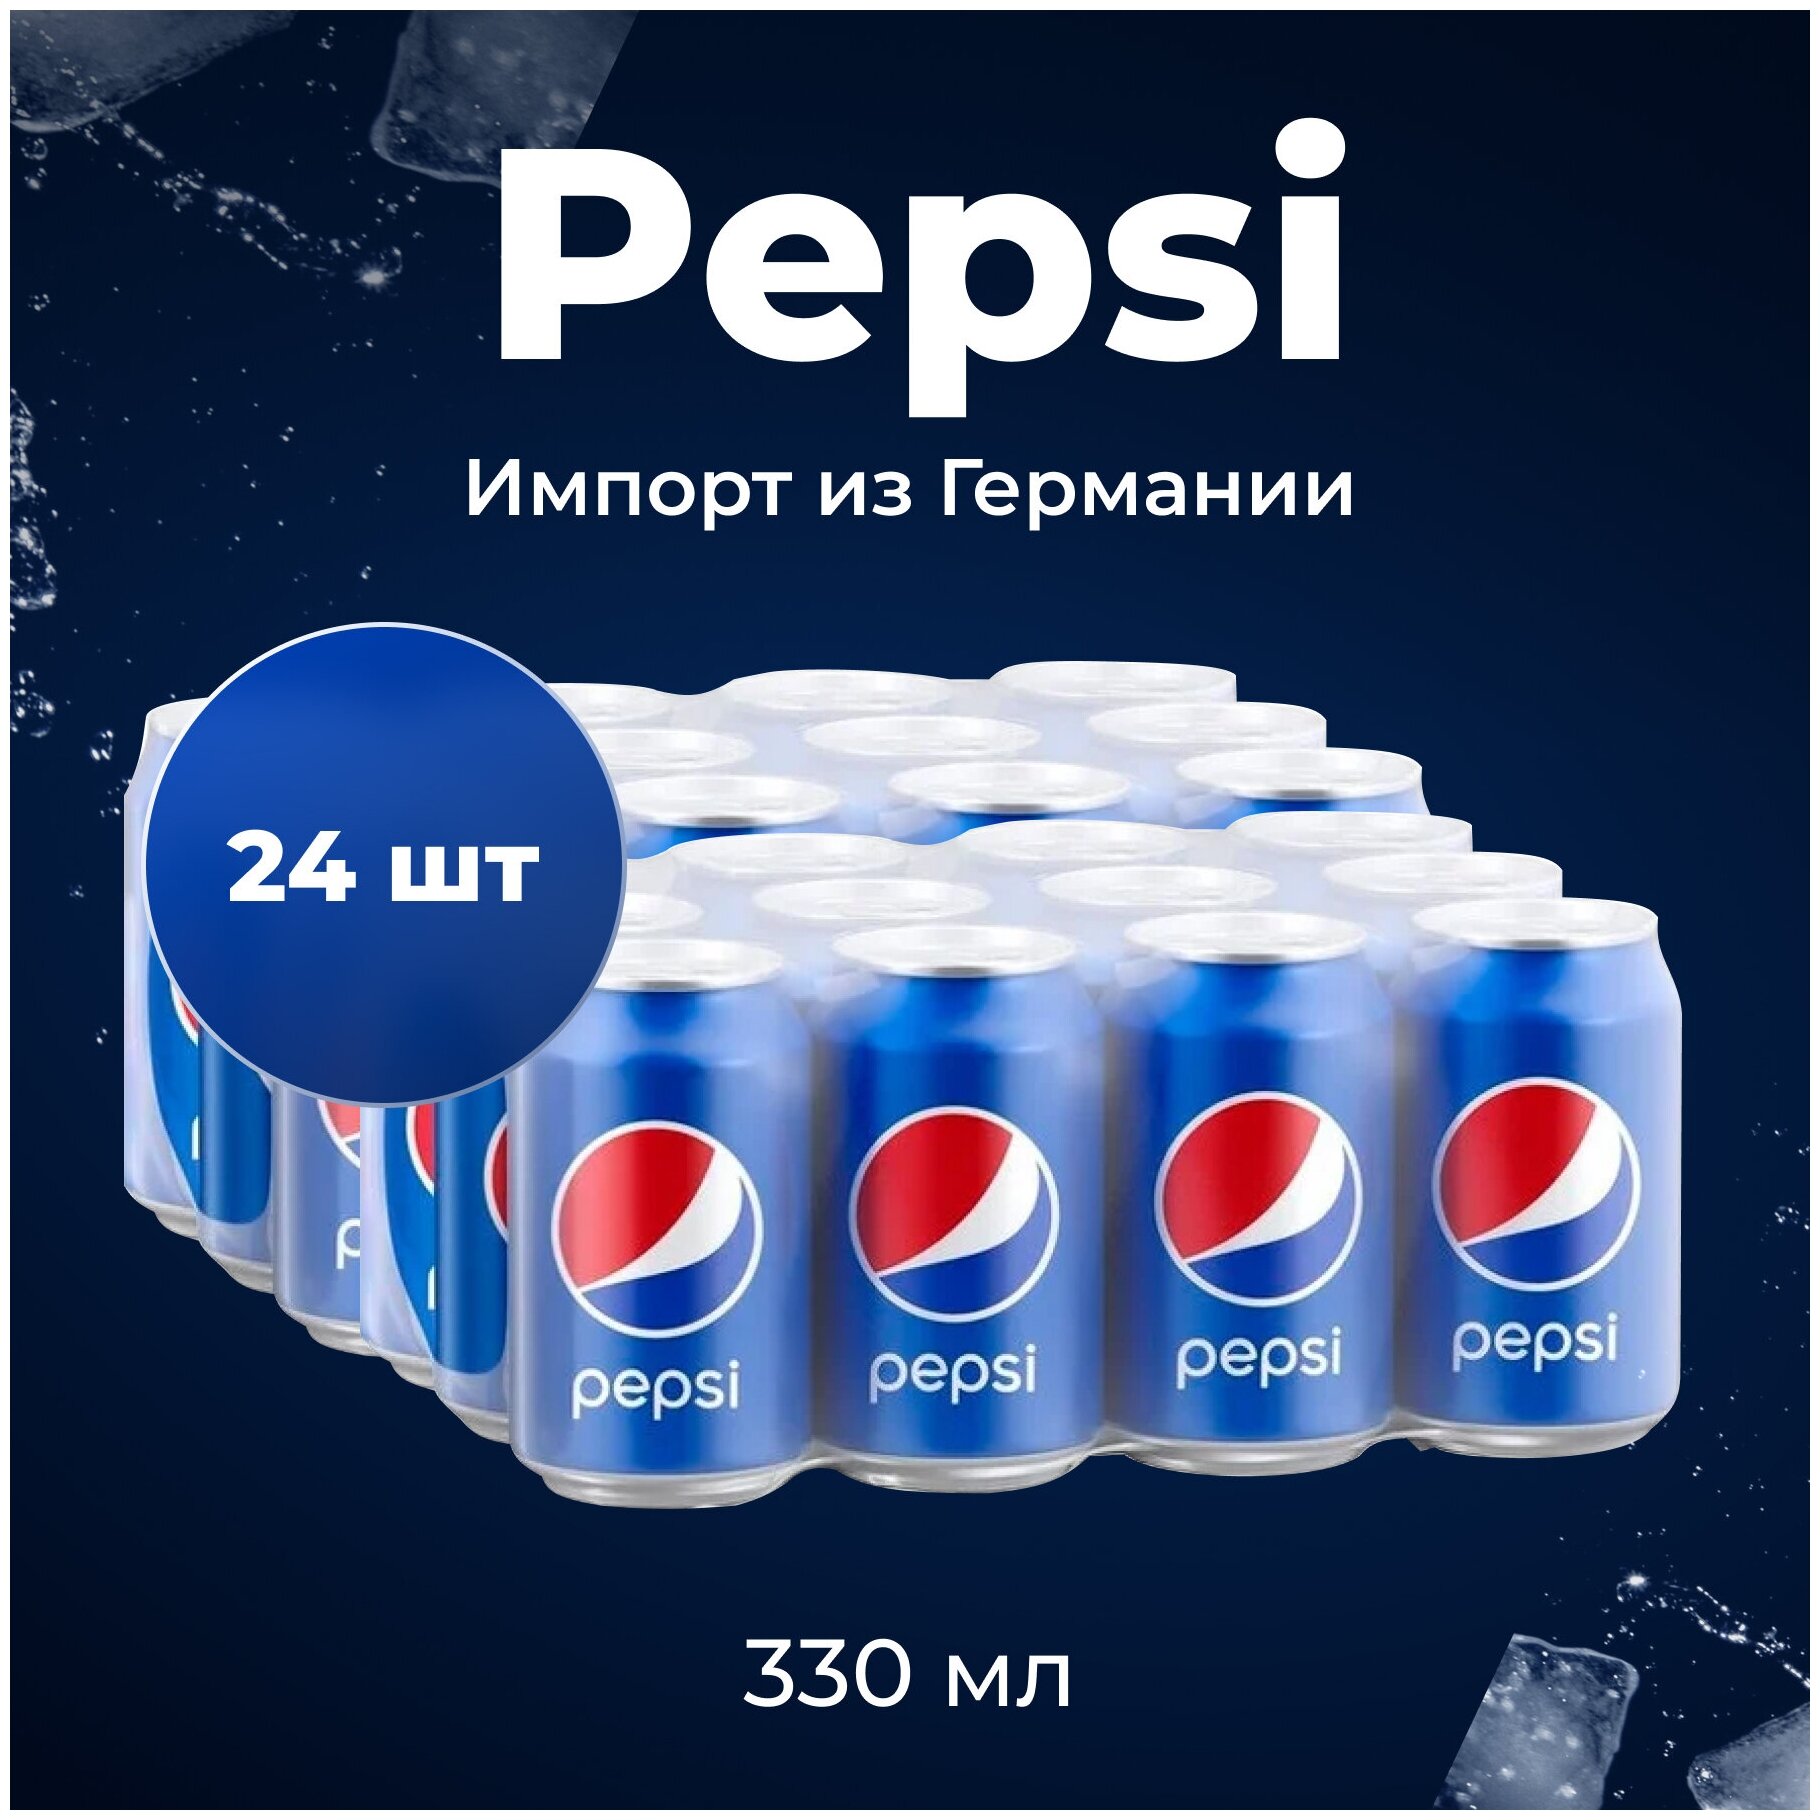 Газированный напиток Pepsi (Пепси) 0.33 ж/б (Германия) 24 штуки